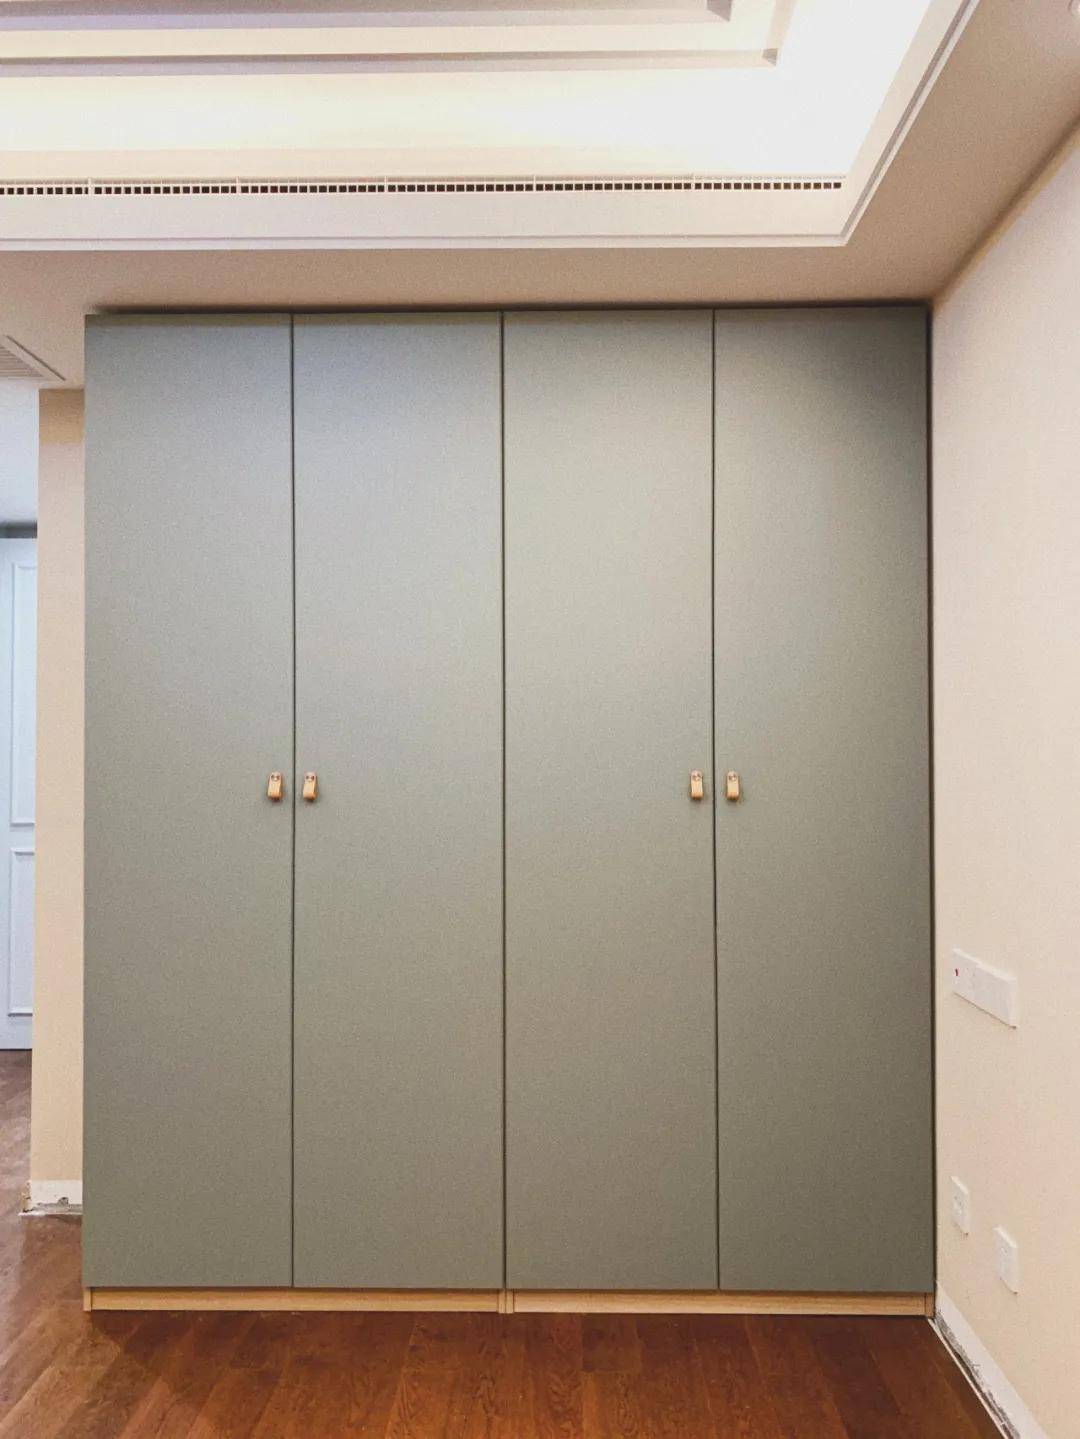 平开门的衣柜整体设计简洁大方,开门的时候可以全部柜门同时开启,是一